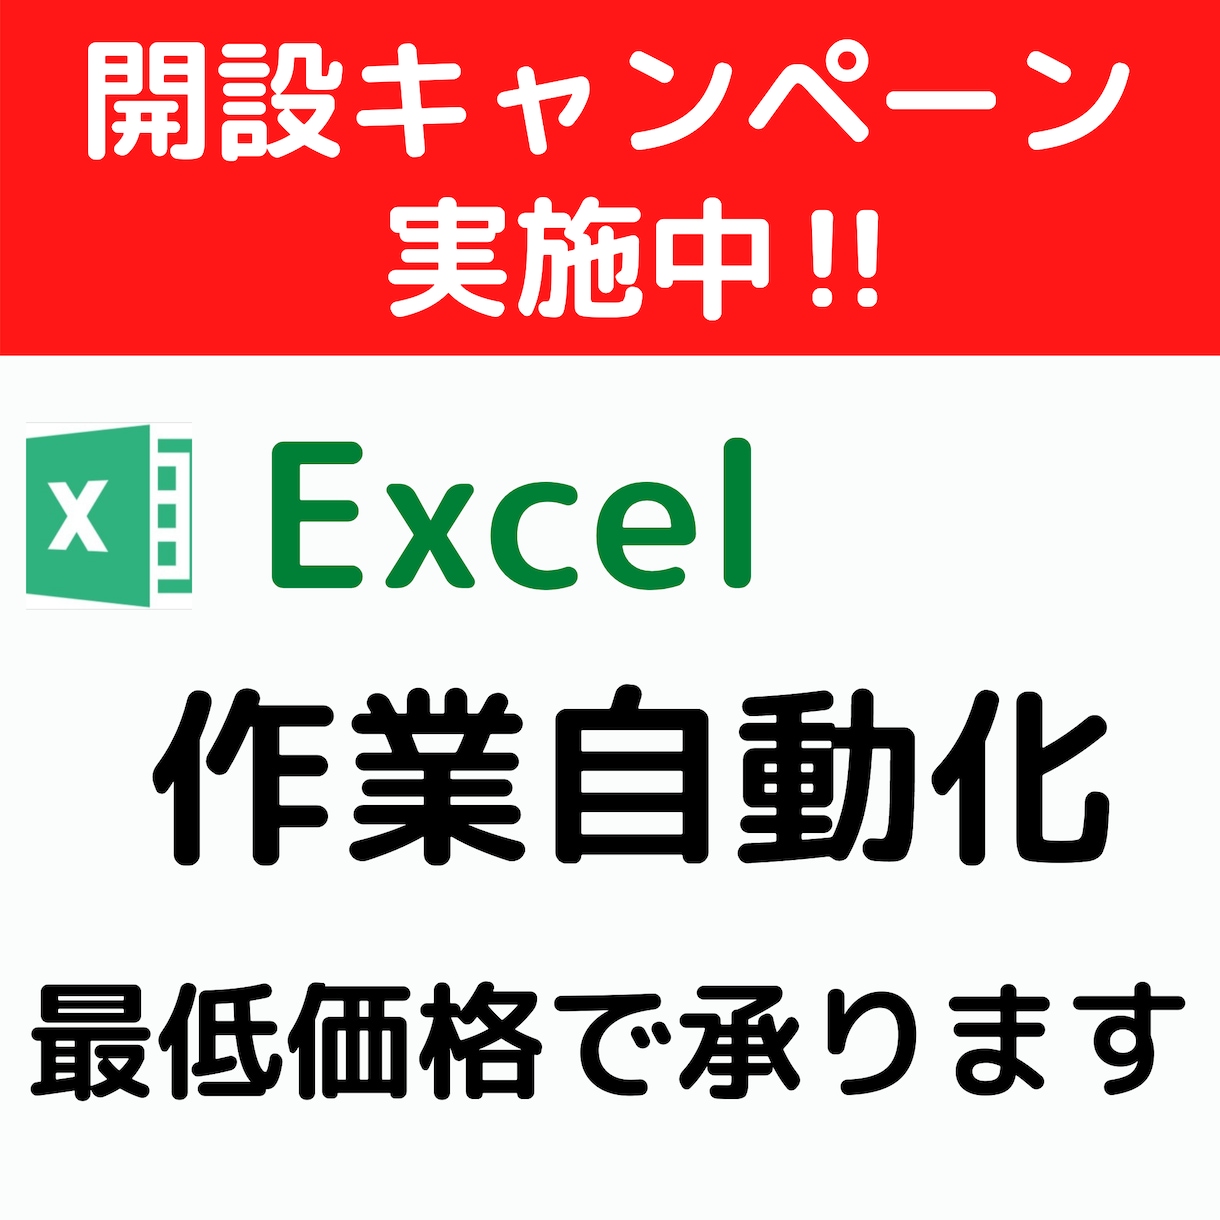 Excelマクロによる作業の自動化をします Excel業務に長けたエンジニアが迅速・丁寧に行います。 イメージ1